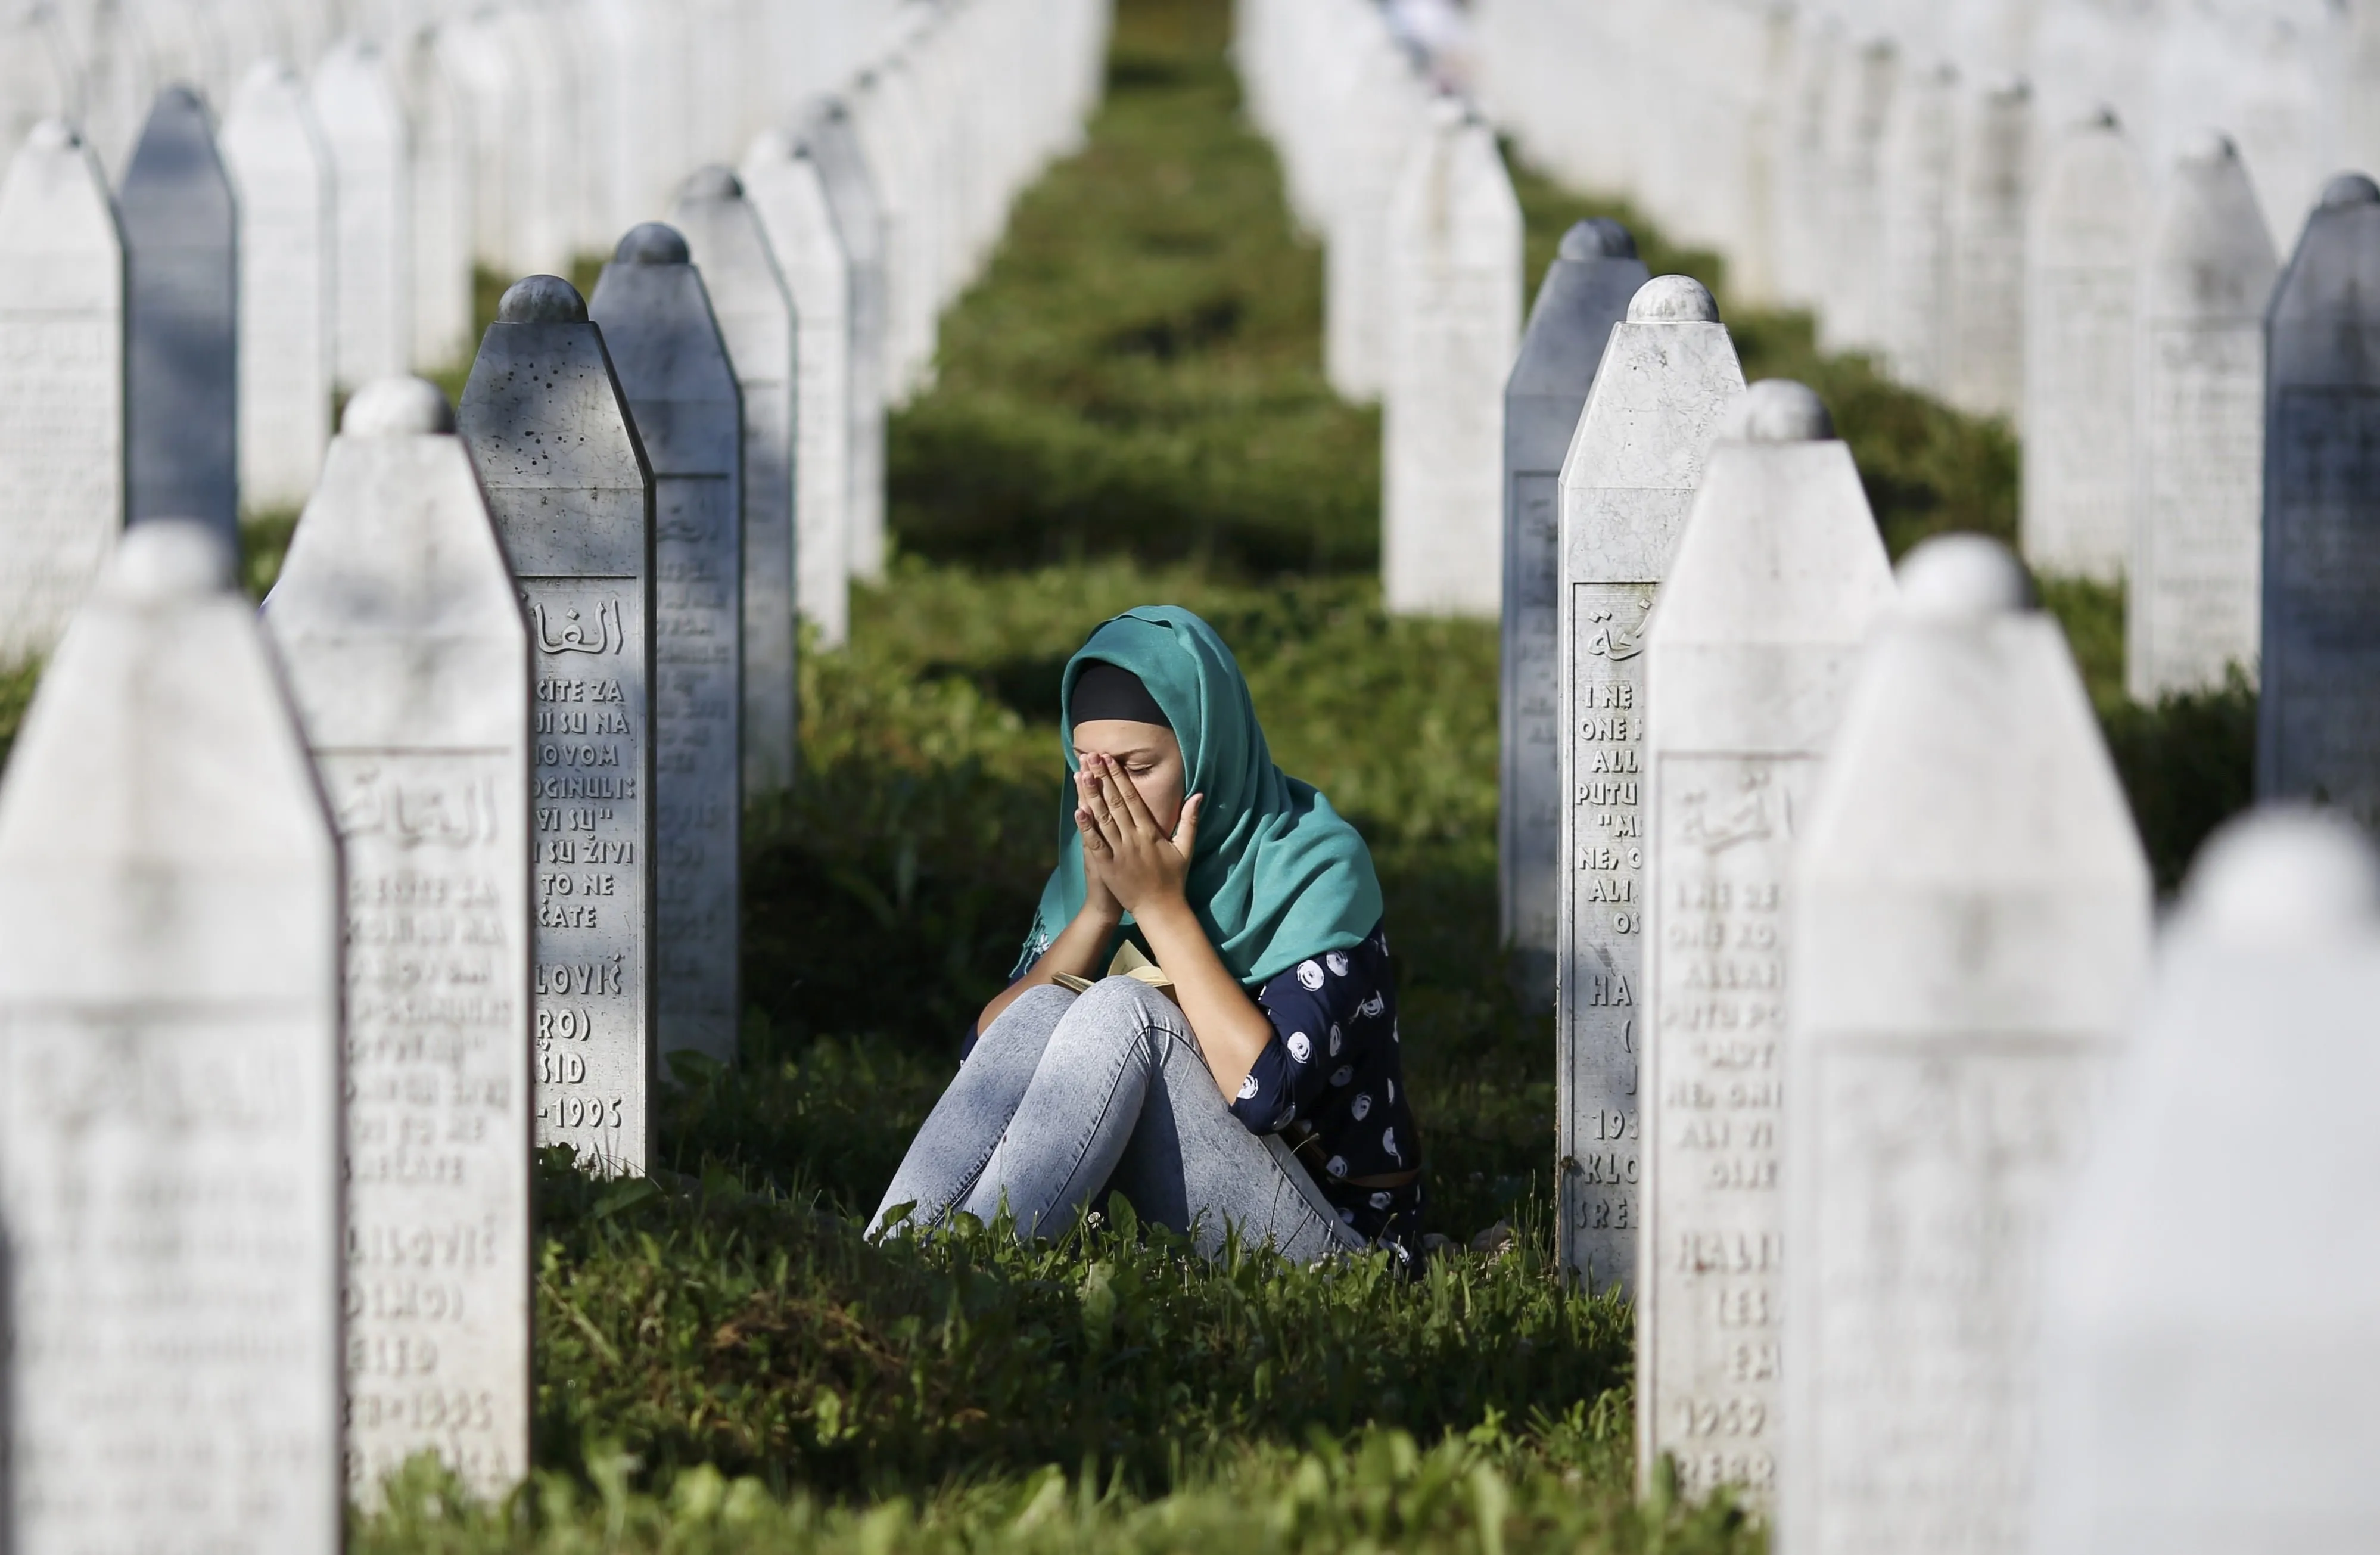 Платок на кладбище. Сребреница кладбище. Srebrenica, Сребреница / Srebrenica, Srebrenica. Геноцид резня Сребренице 1995 боснийских мусульман.